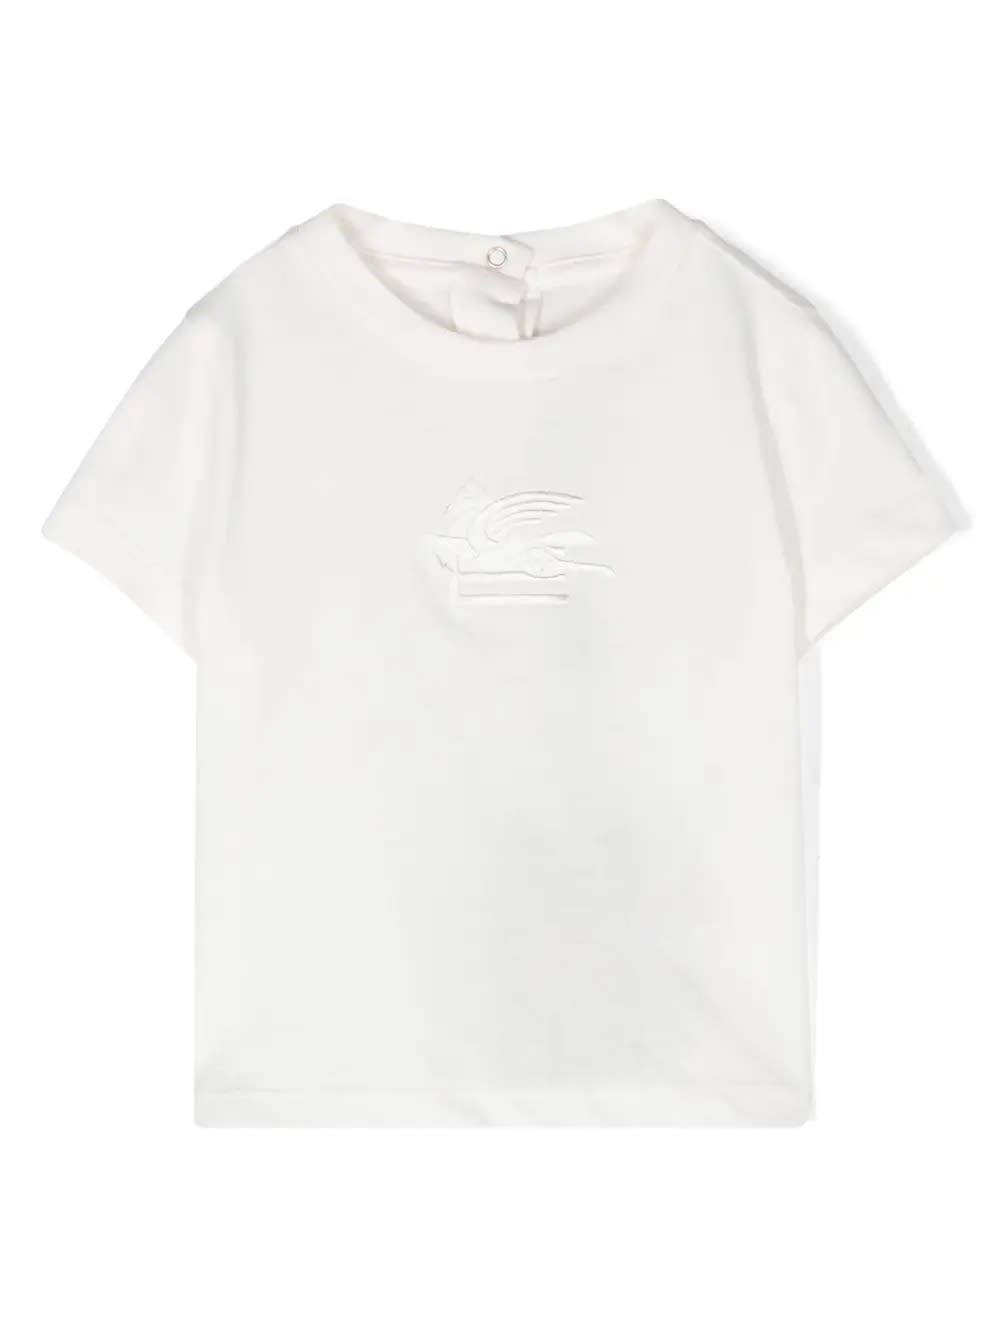 Etro Babies' White T-shirt With Pegasus Motif In Tone